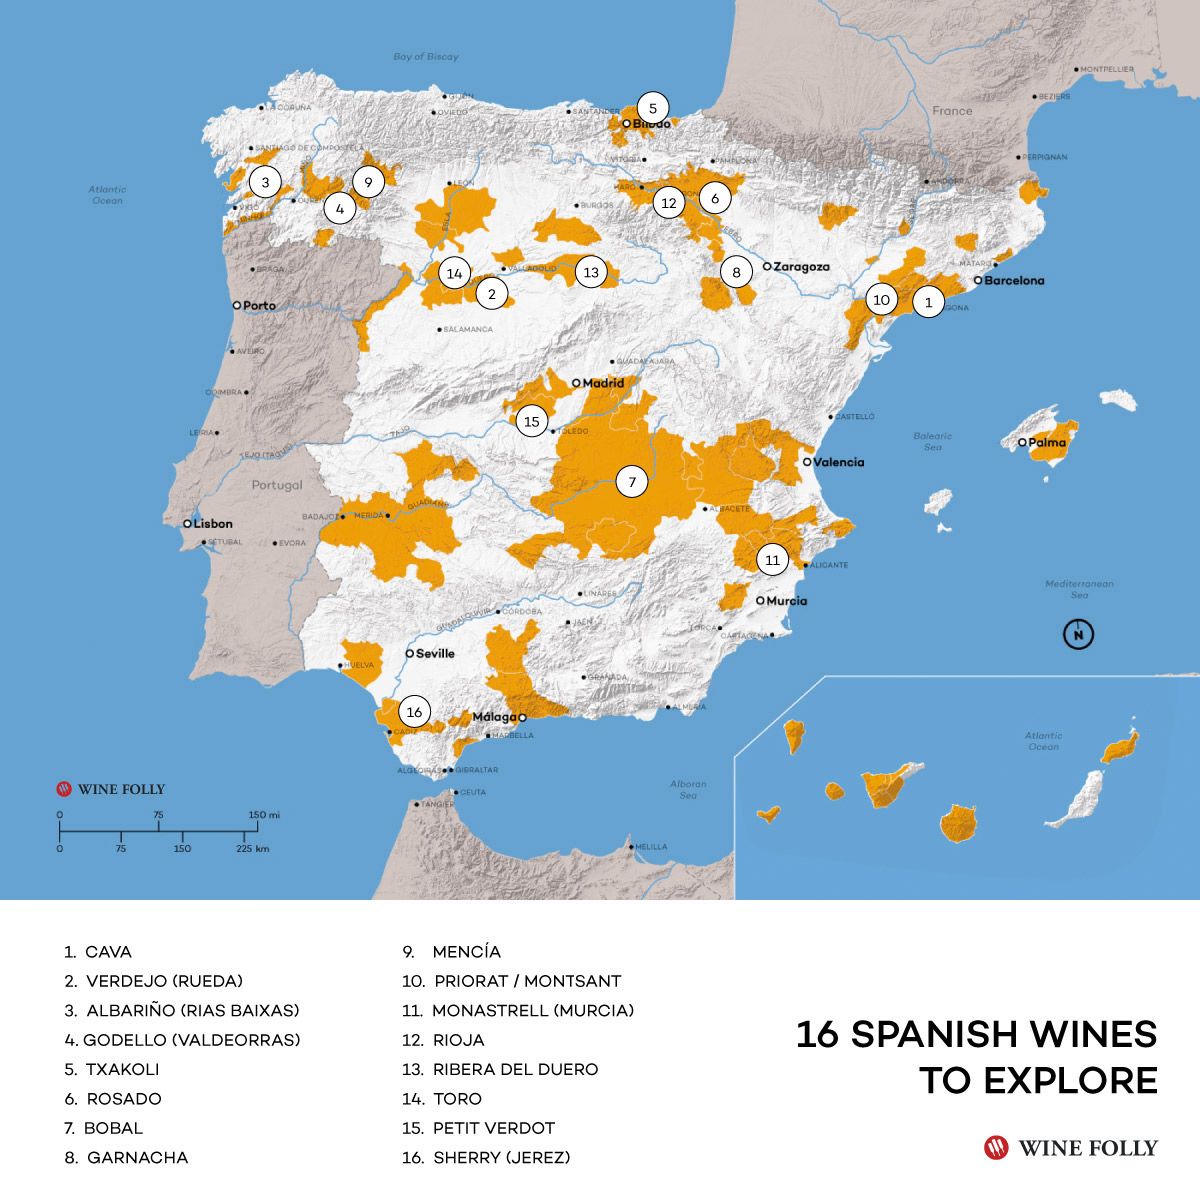 Mapa prieskumu španielskeho vína od spoločnosti Wine Folly